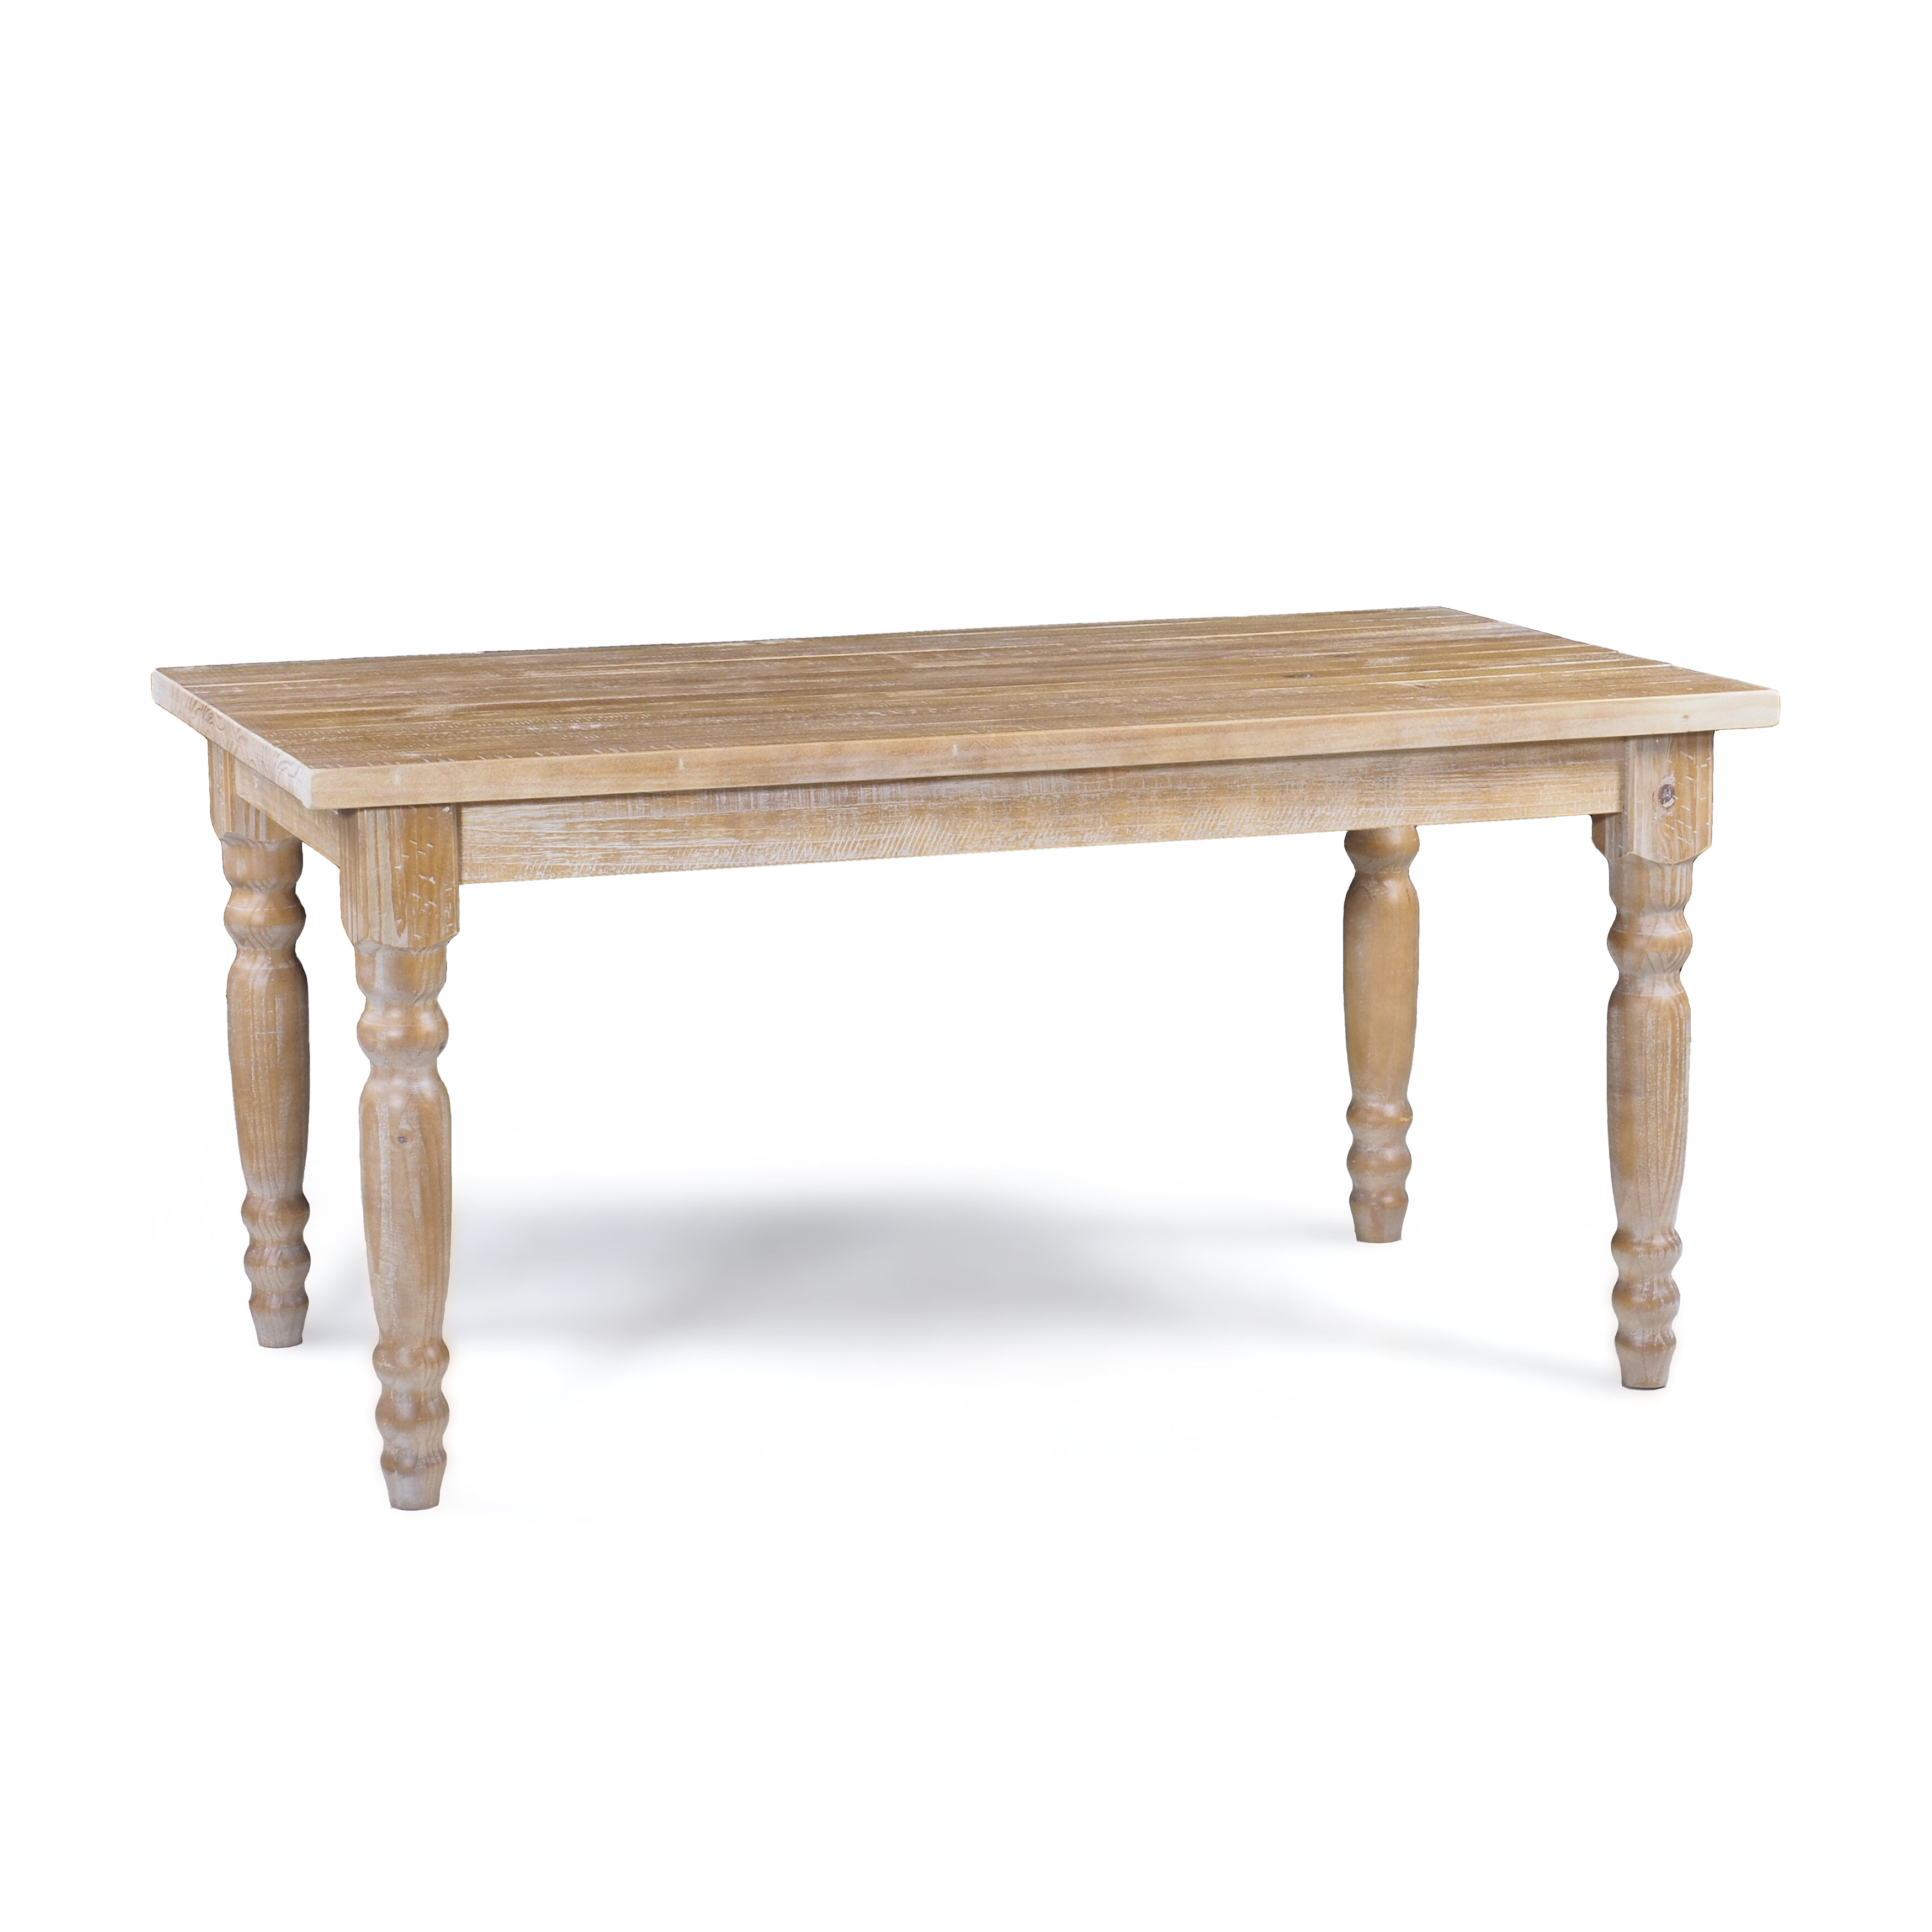 Wood Furniture Valerie 63'' Pine Solid Wood Table & Reviews | Wayfair